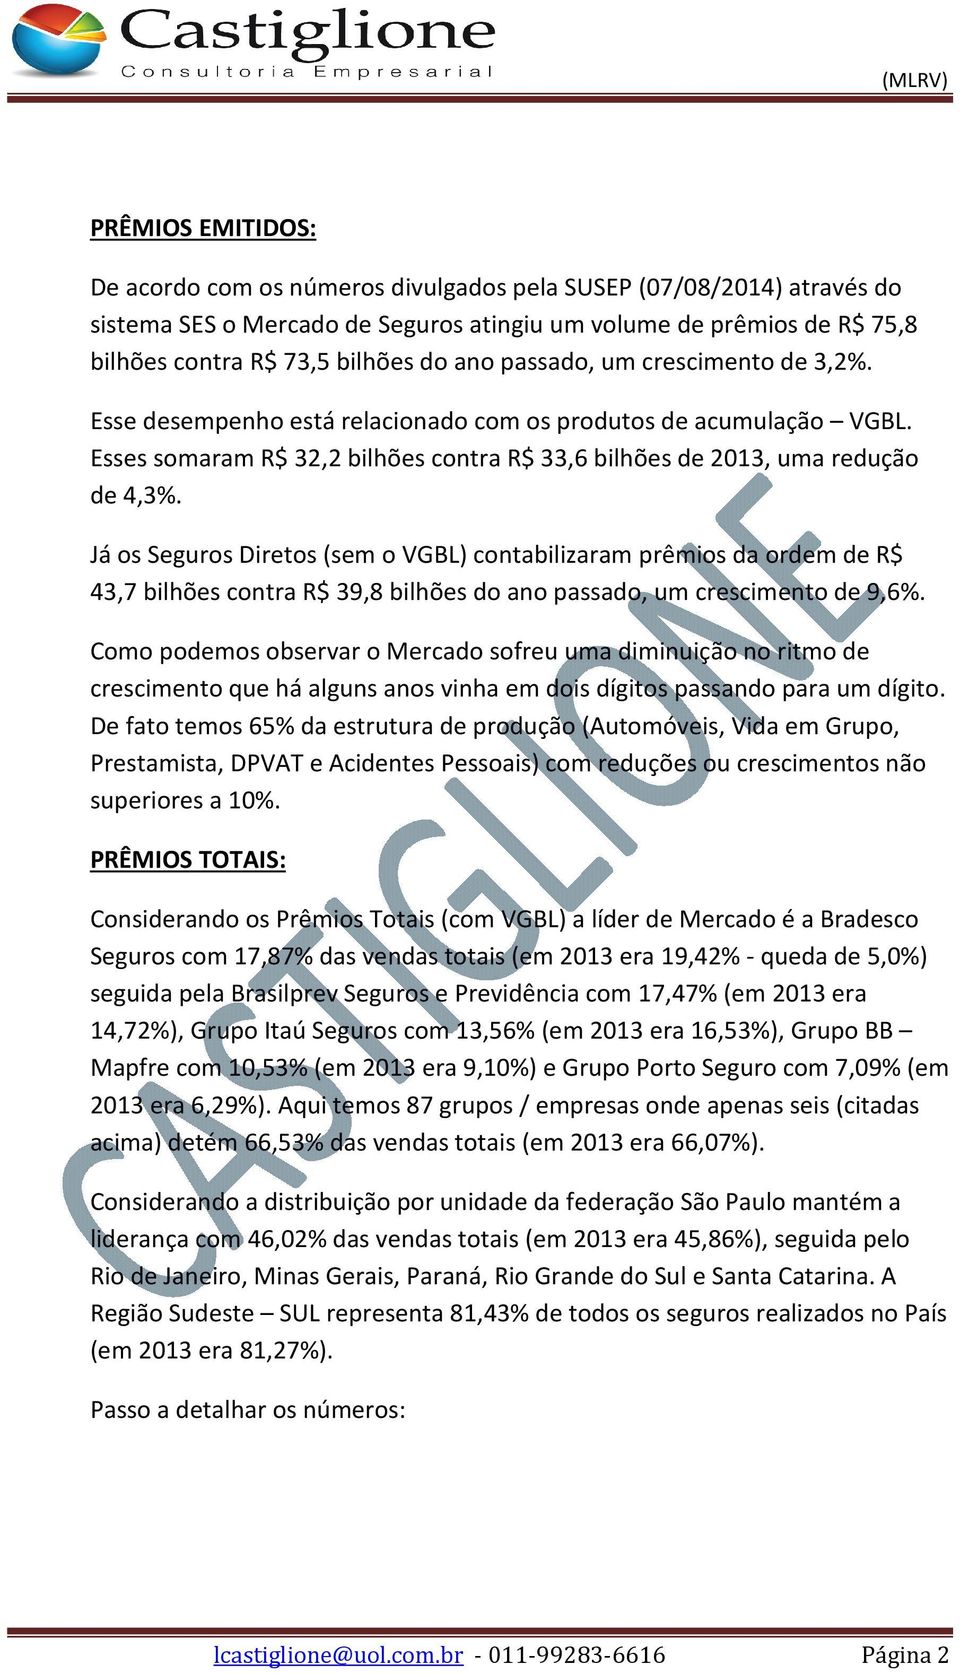 Já os Seguros Diretos (sem o VGBL) contabilizaram prêmios da ordem de R$ 43,7 bilhões contra R$ 39,8 bilhões do ano passado, um crescimento de 9,6%.